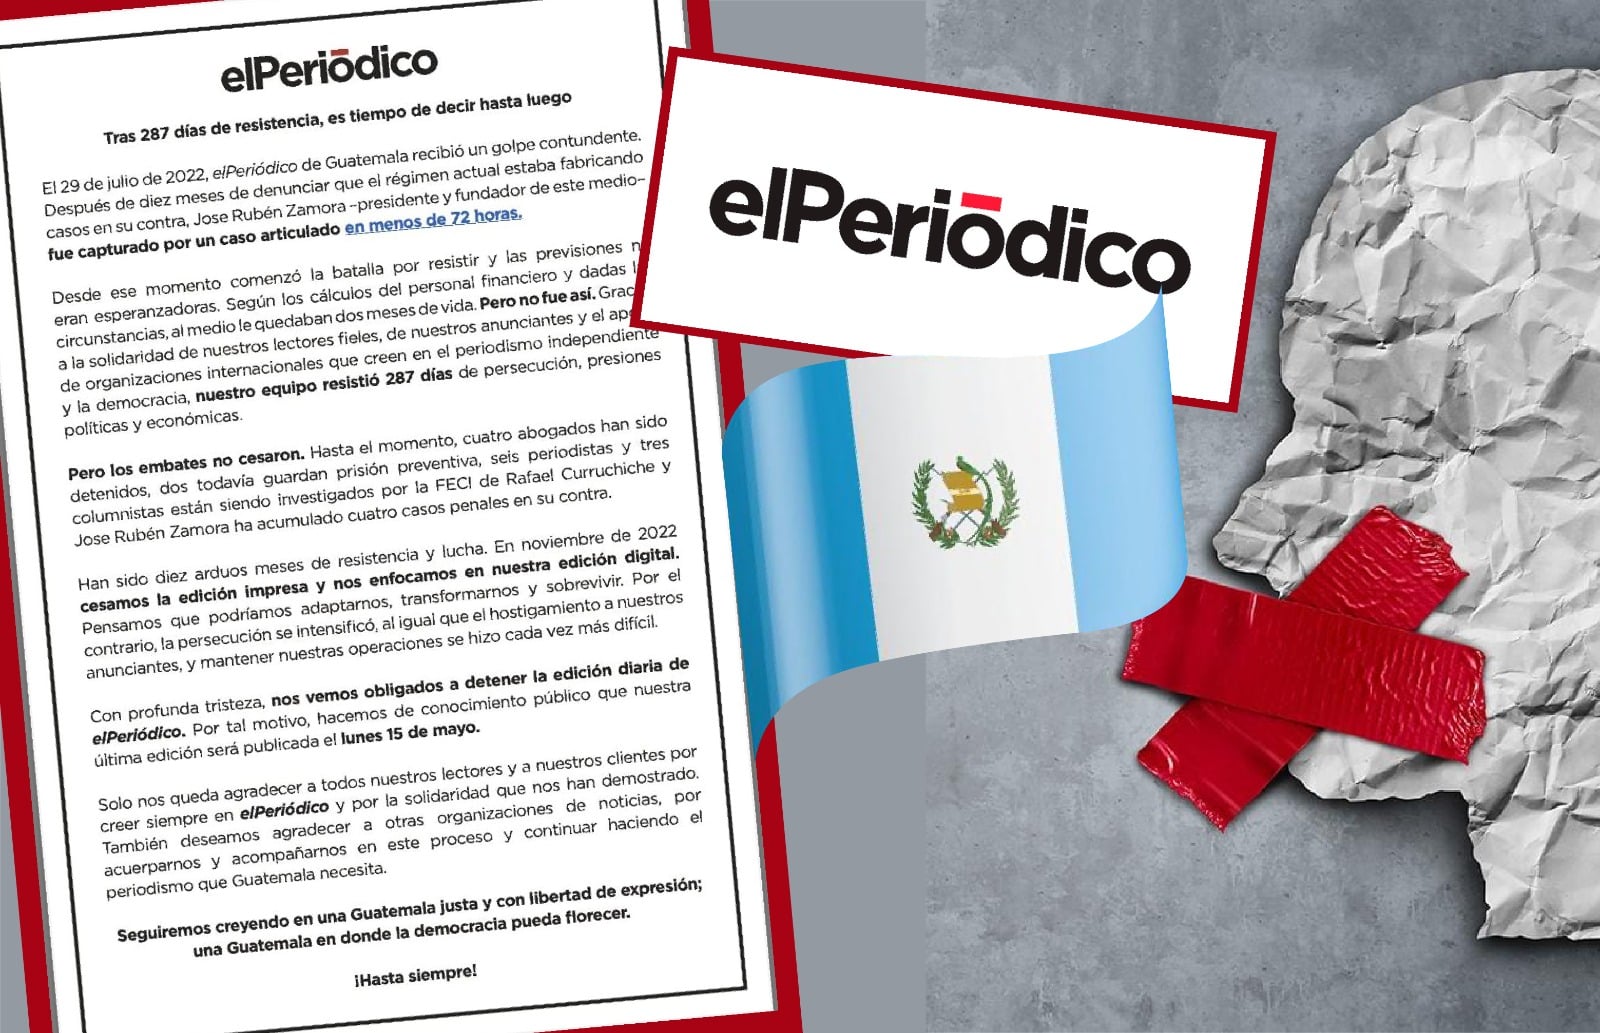 Cierre de elPeriódico debilita la democracia e impone la censura en Guatemala